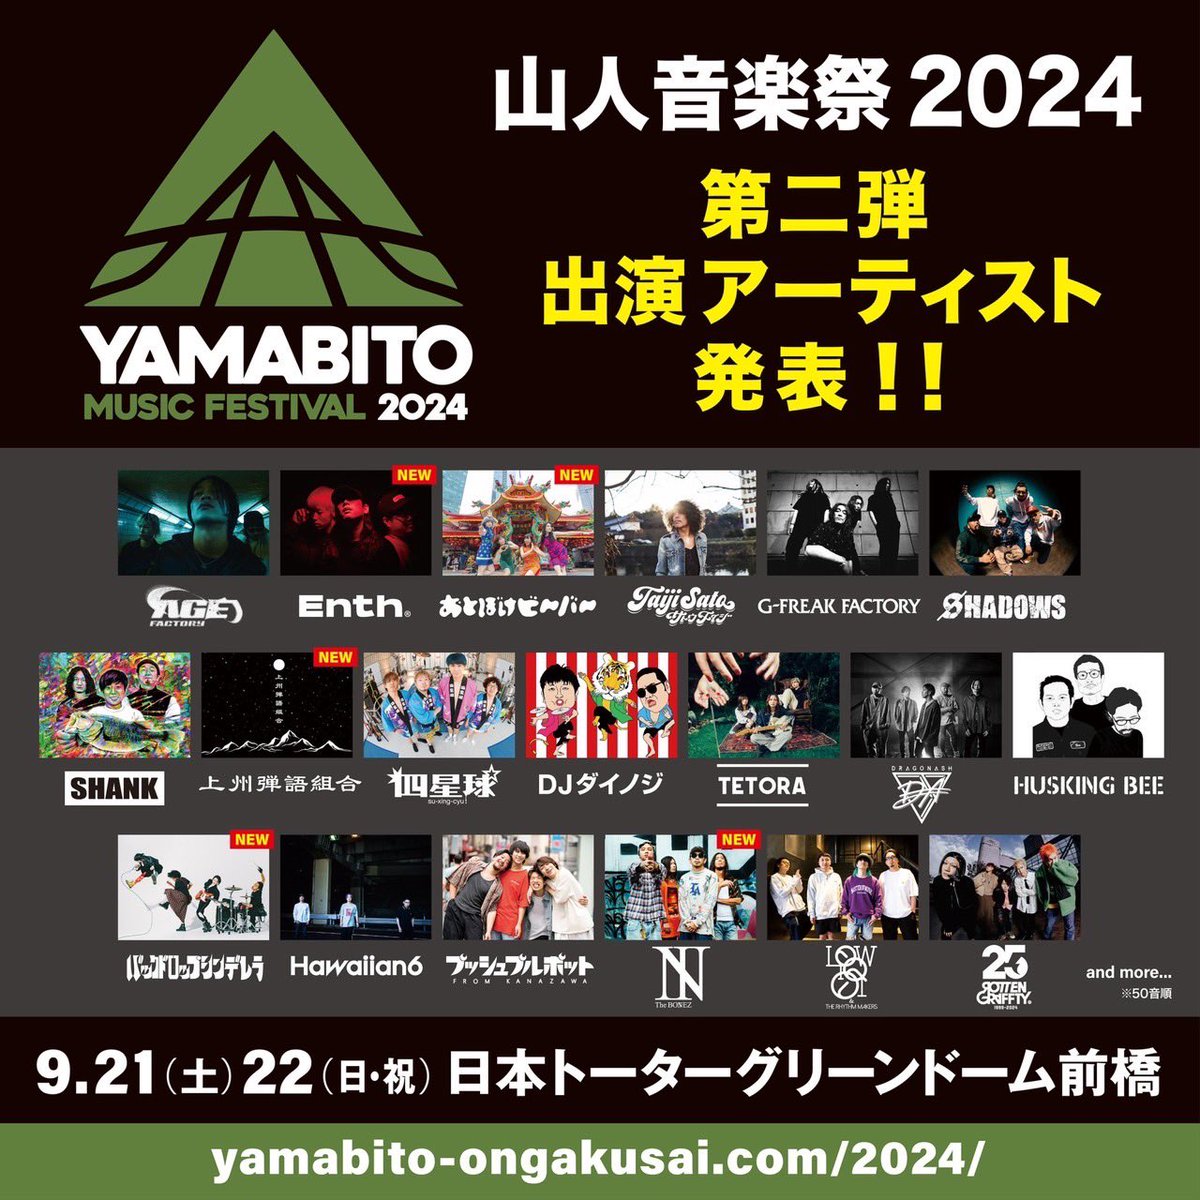 山人音楽祭2024に上州弾語組合の出演が決定しました！ 出演者につきましては改めてご案内致します。 またイベント詳細は山人音楽祭の公式サイトをご確認ください。 yamabito-ongakusai.com/2024/